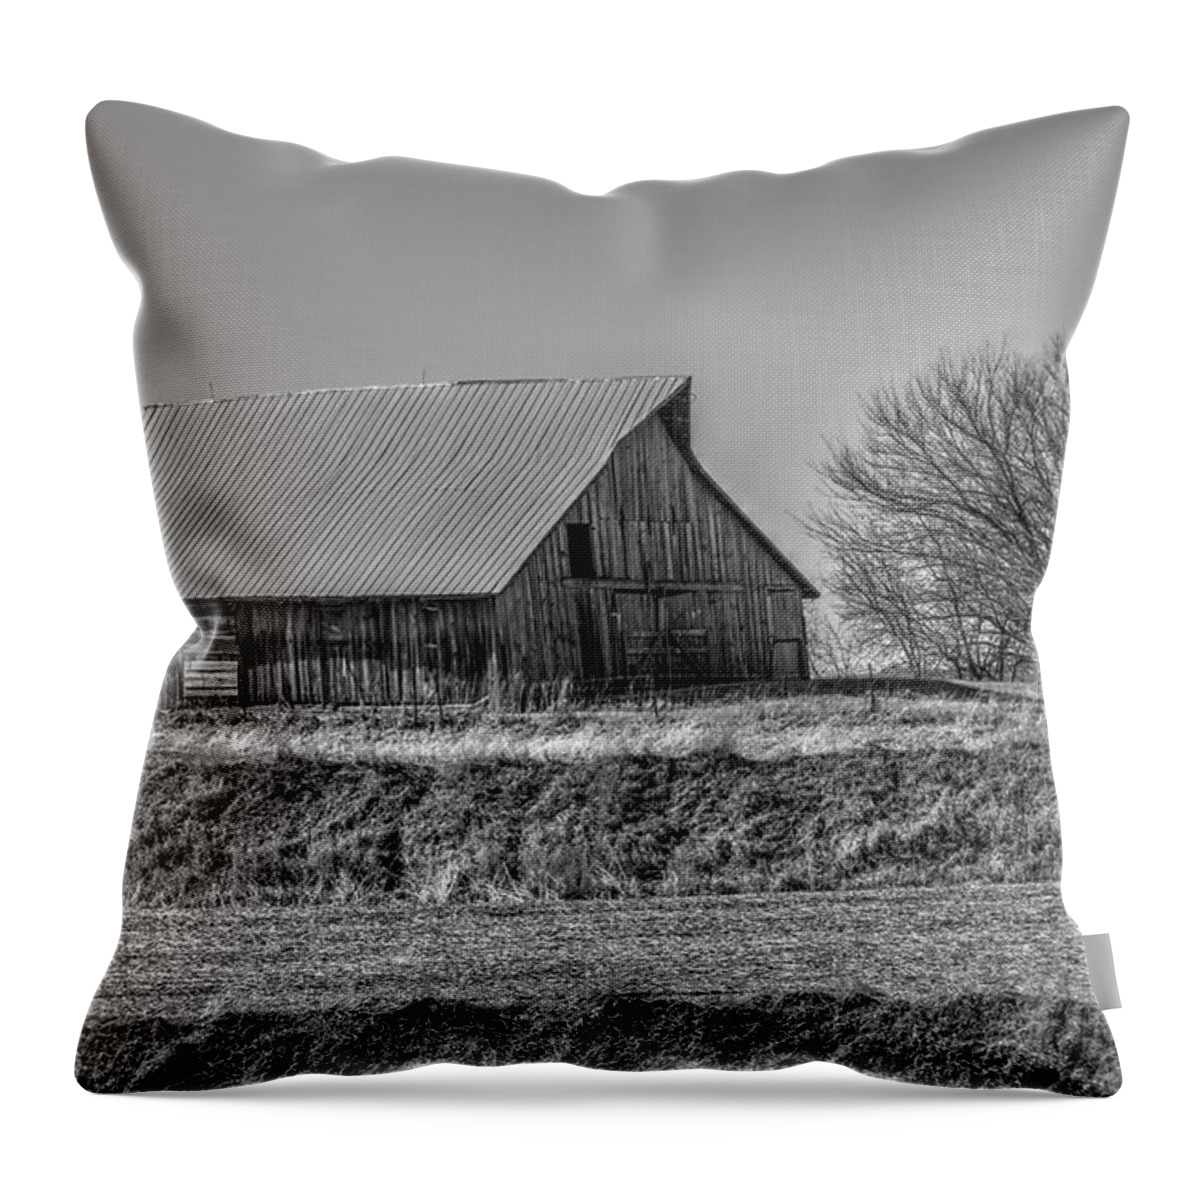 Iowa Throw Pillow featuring the photograph Rustic Rural Iowa by J Laughlin